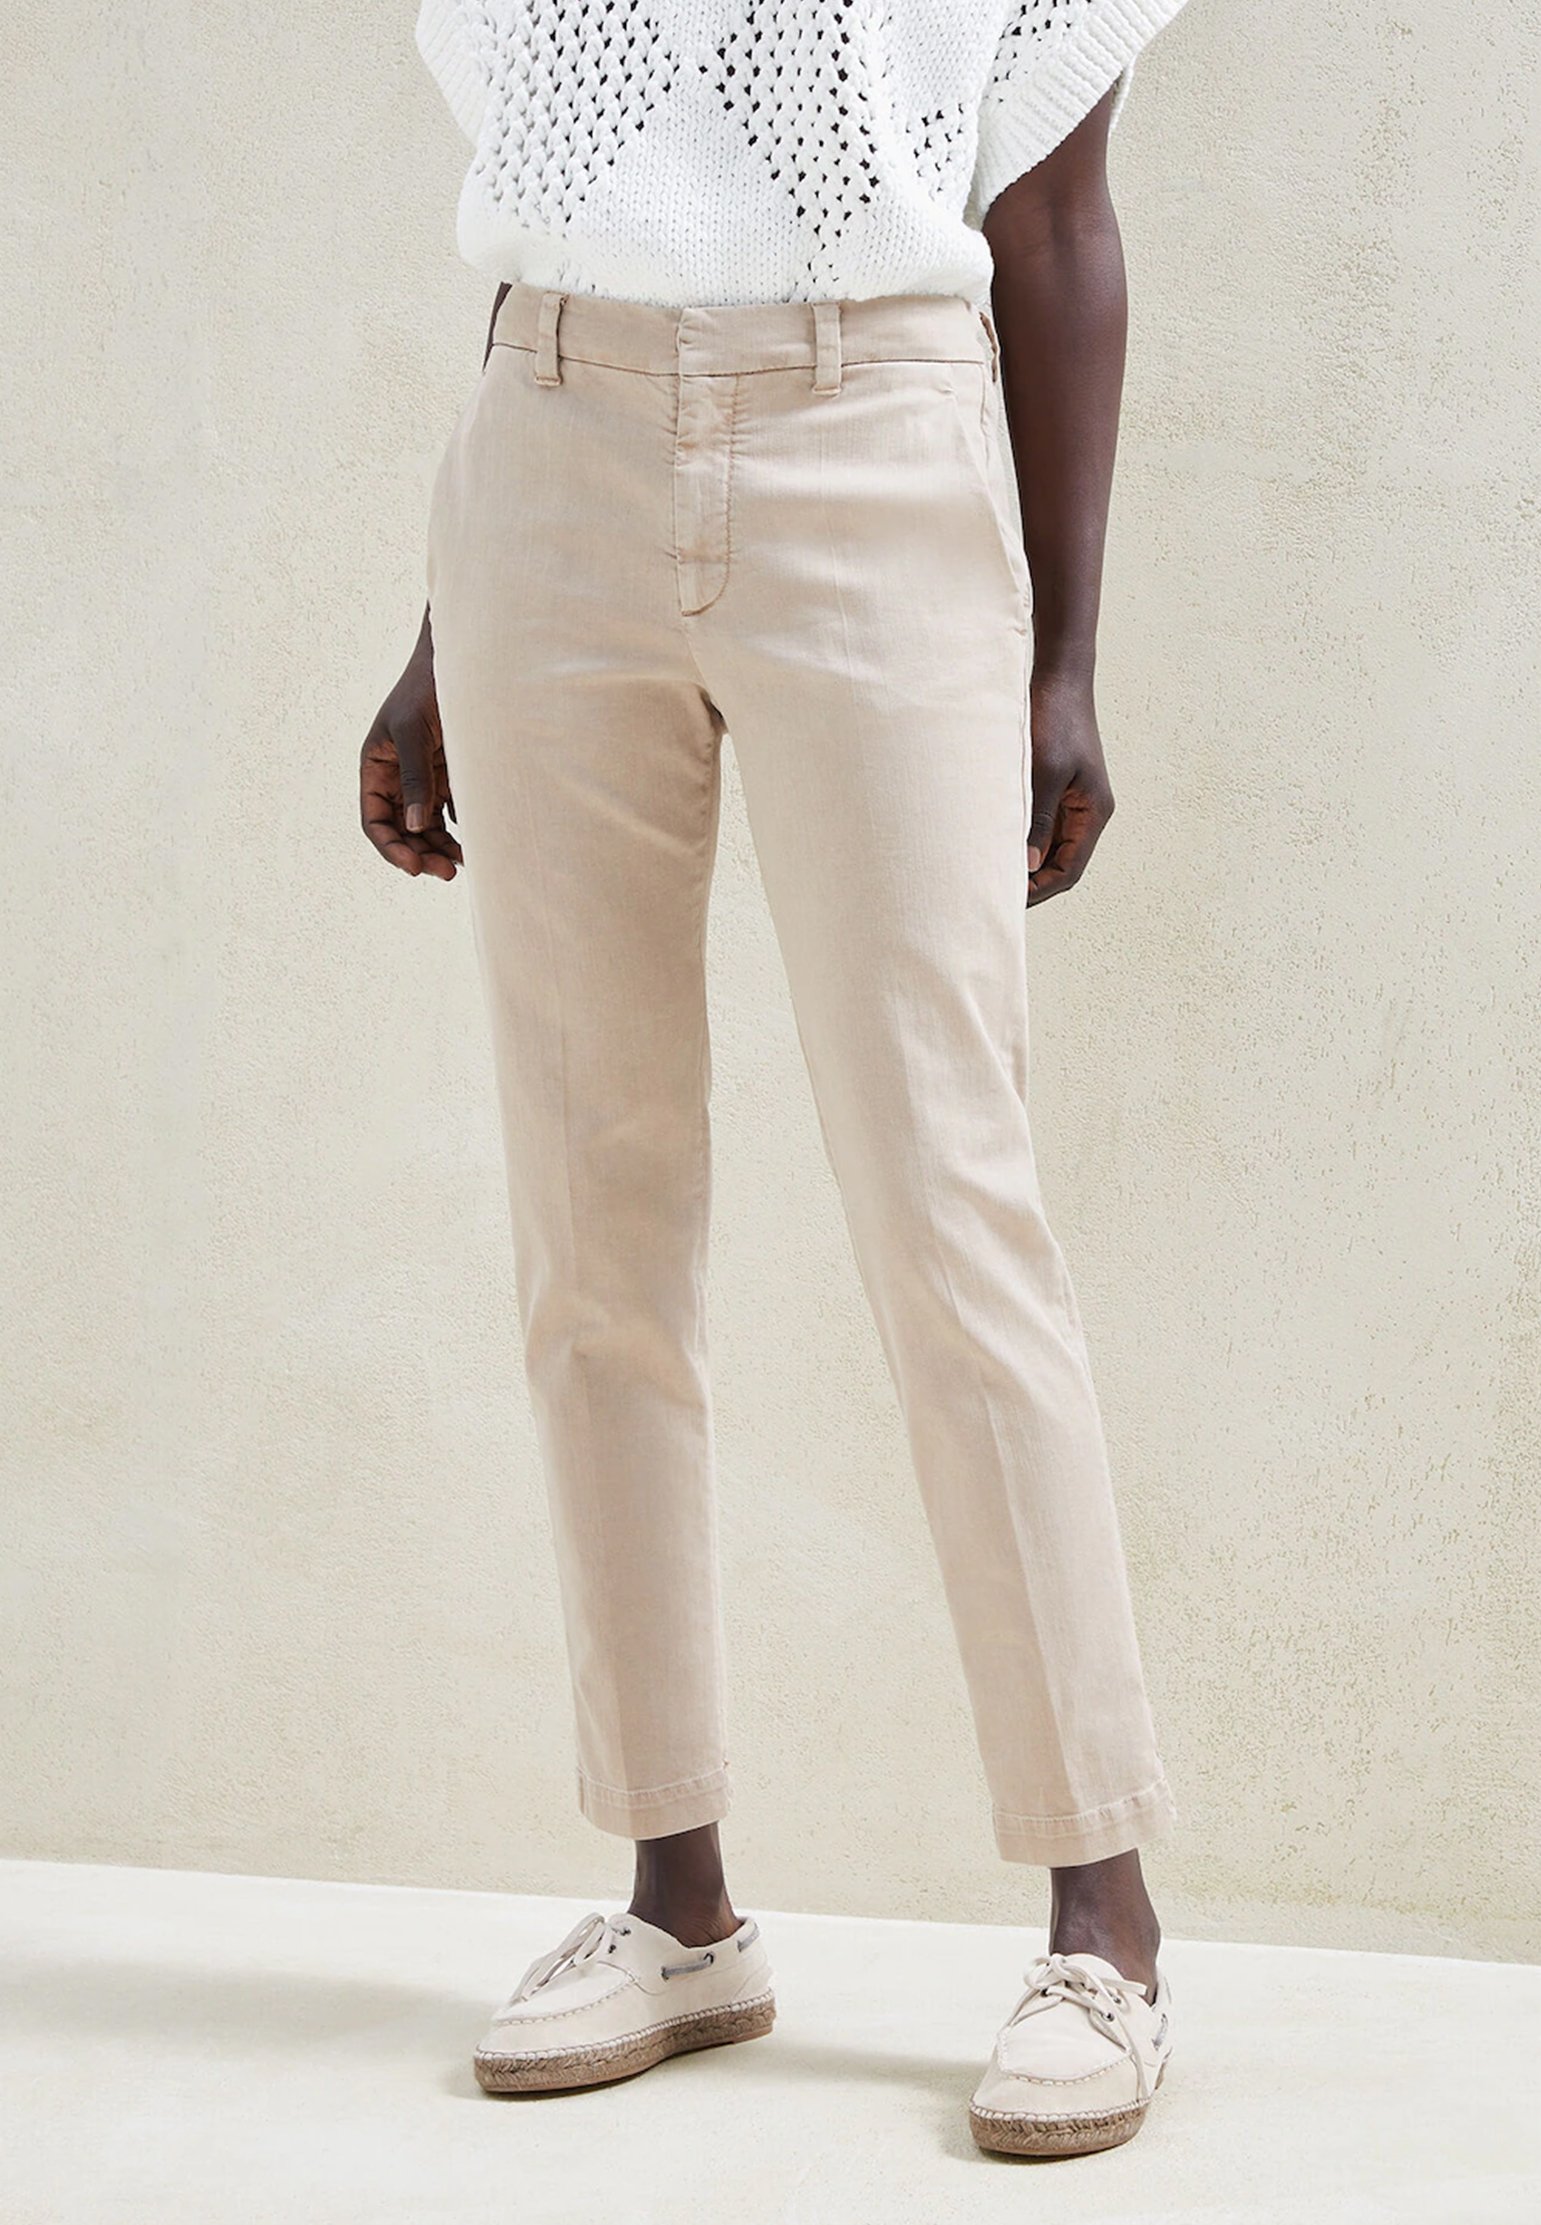 Pants BRUNELLO CUCINELLI Color: beige (Code: 614) in online store Allure